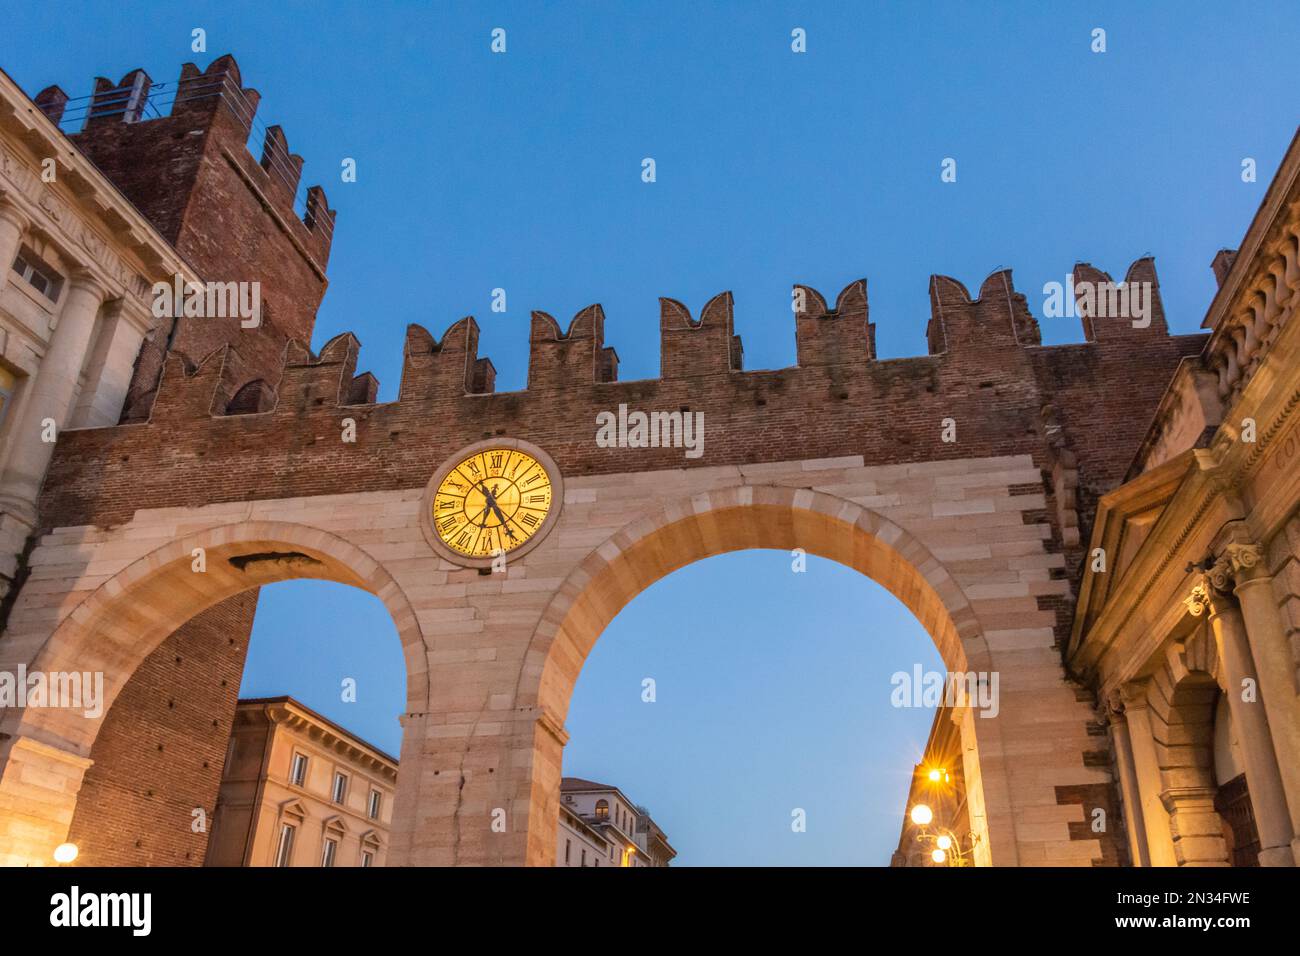 Entrada medieval de la ciudad histórica Verona - arcos de la puerta de la ciudad - región de Veneto en el norte de Italia, Europa Foto de stock